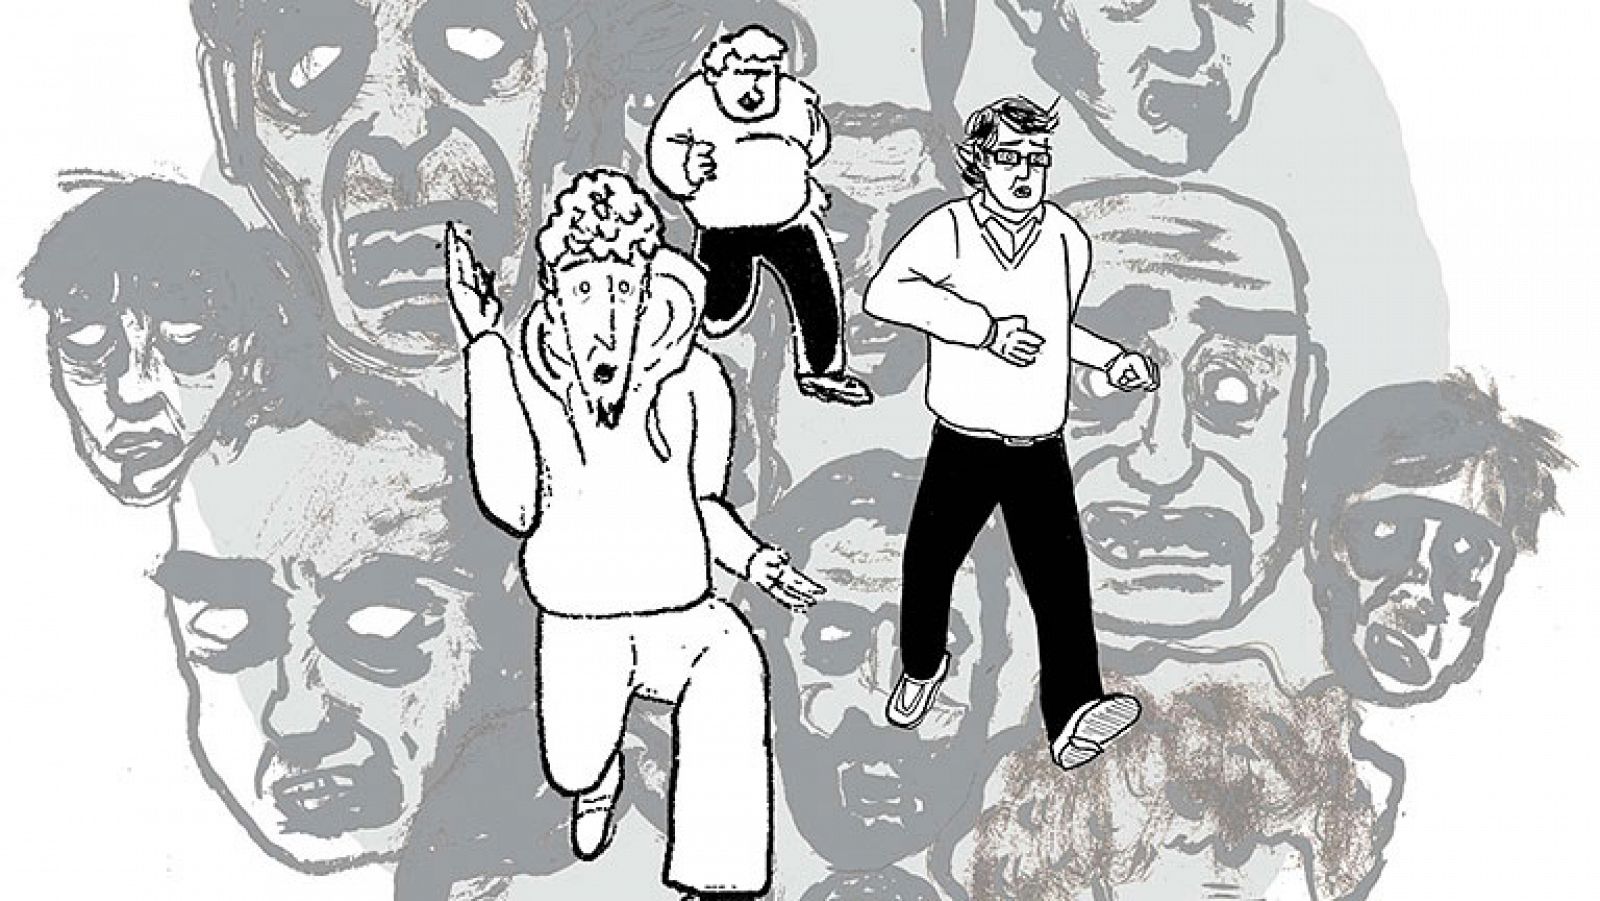  El cómic "Noctis Irae", de José María Maesa, Joaquín Díaz, Israel Ramos -guionistas- y Cristian Pineda -ilustrador-, que ofrece una visión insólita de la Semana Santa sevillana contando una invasión zombi la noche de las famosas procesiones.